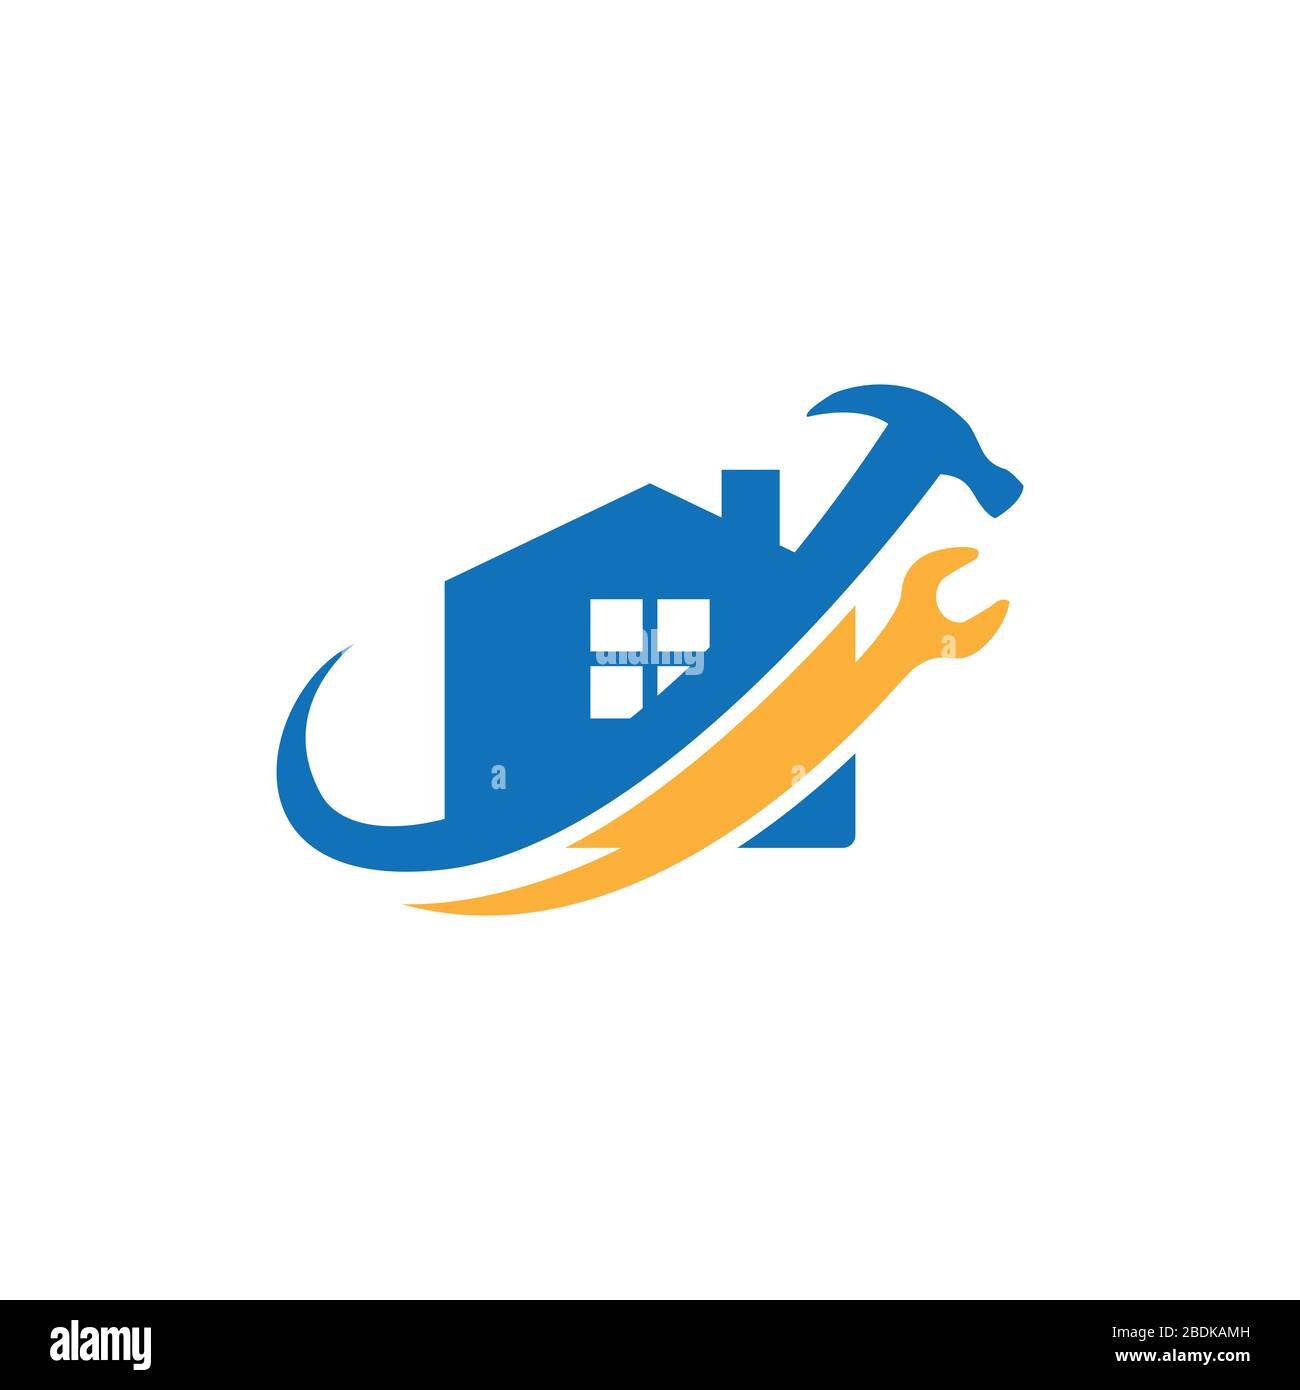 Creative casa riparazione logo Premium Vector. Logo Home Repair con strumenti di manutenzione e immagine vettoriale della casa Illustrazione Vettoriale